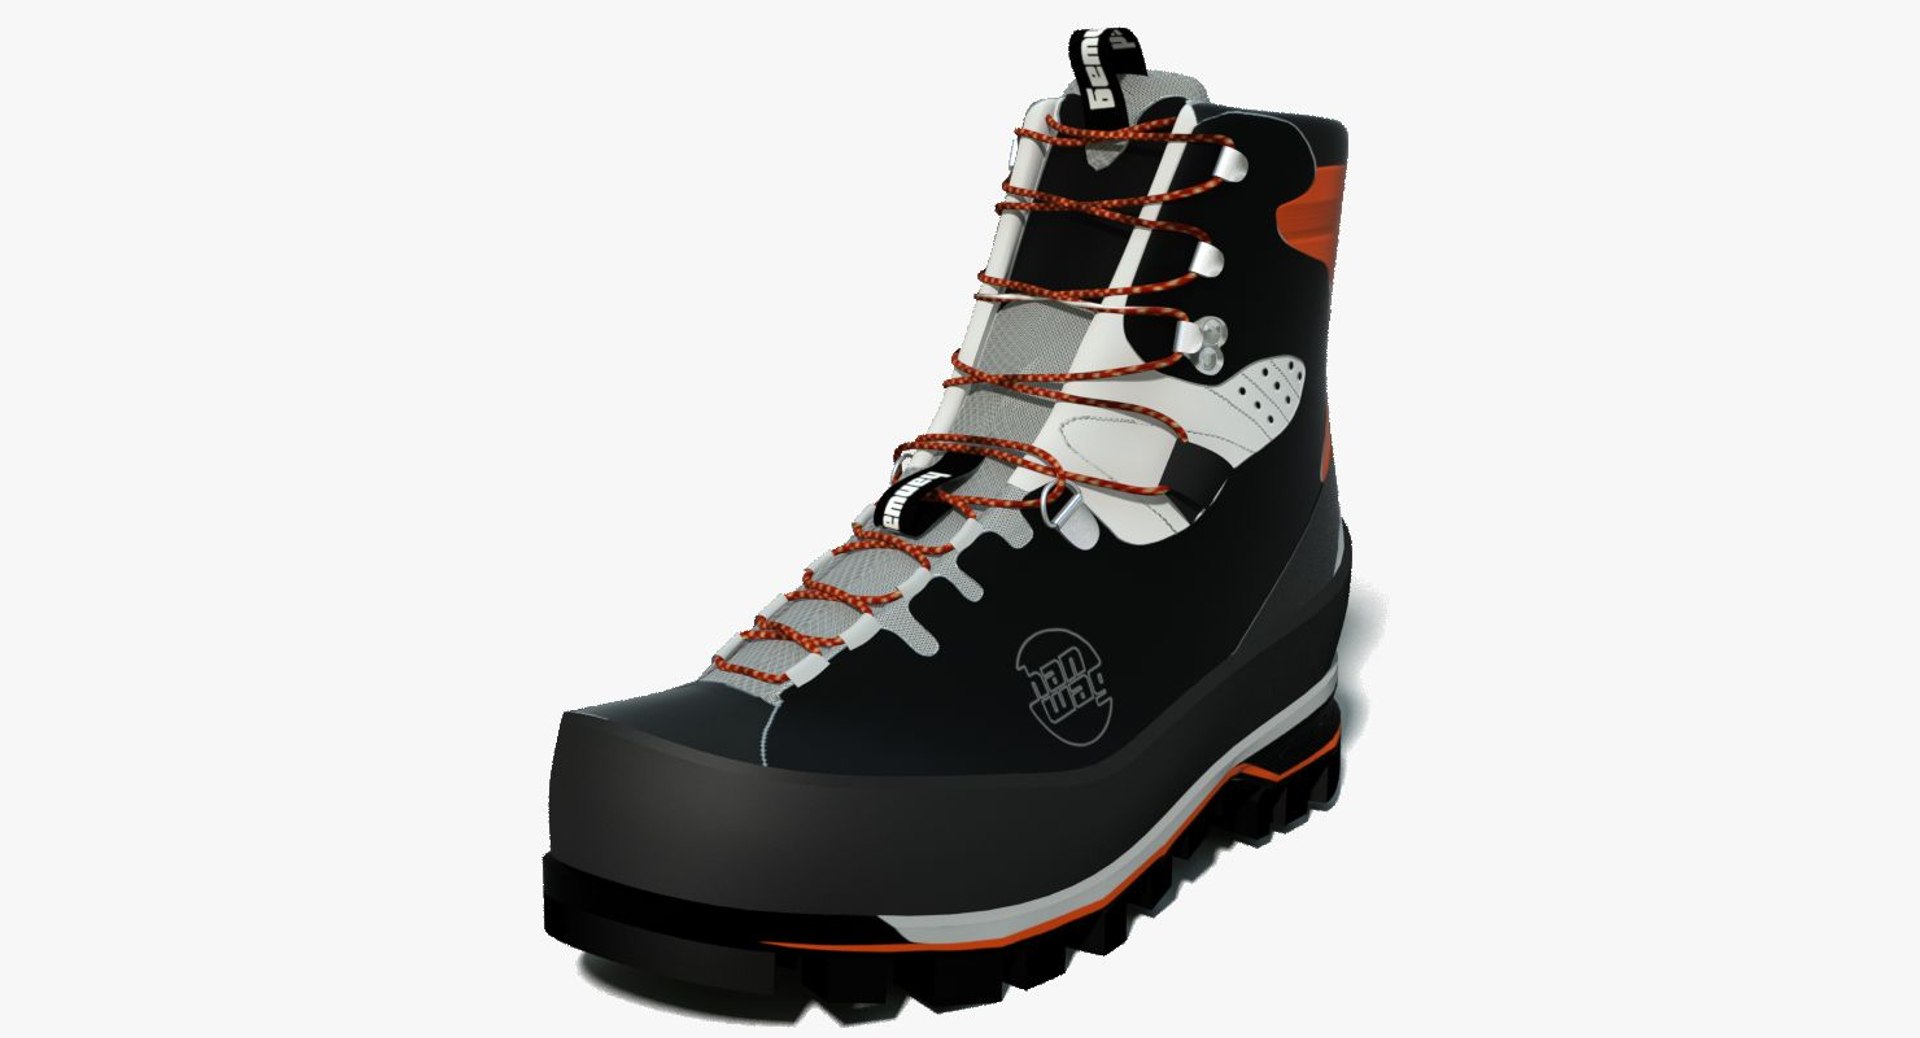 3D hanwag friction shoes https://p.turbosquid.com/ts-thumb/eE/k1MS2X/QgjRoxZL/signatureimg_jpg/jpg/1507017737/1920x1080/fit_q87/a76ed81ab50d1d4838d5a528078cf9b9818ad509/signatureimg_jpg.jpg